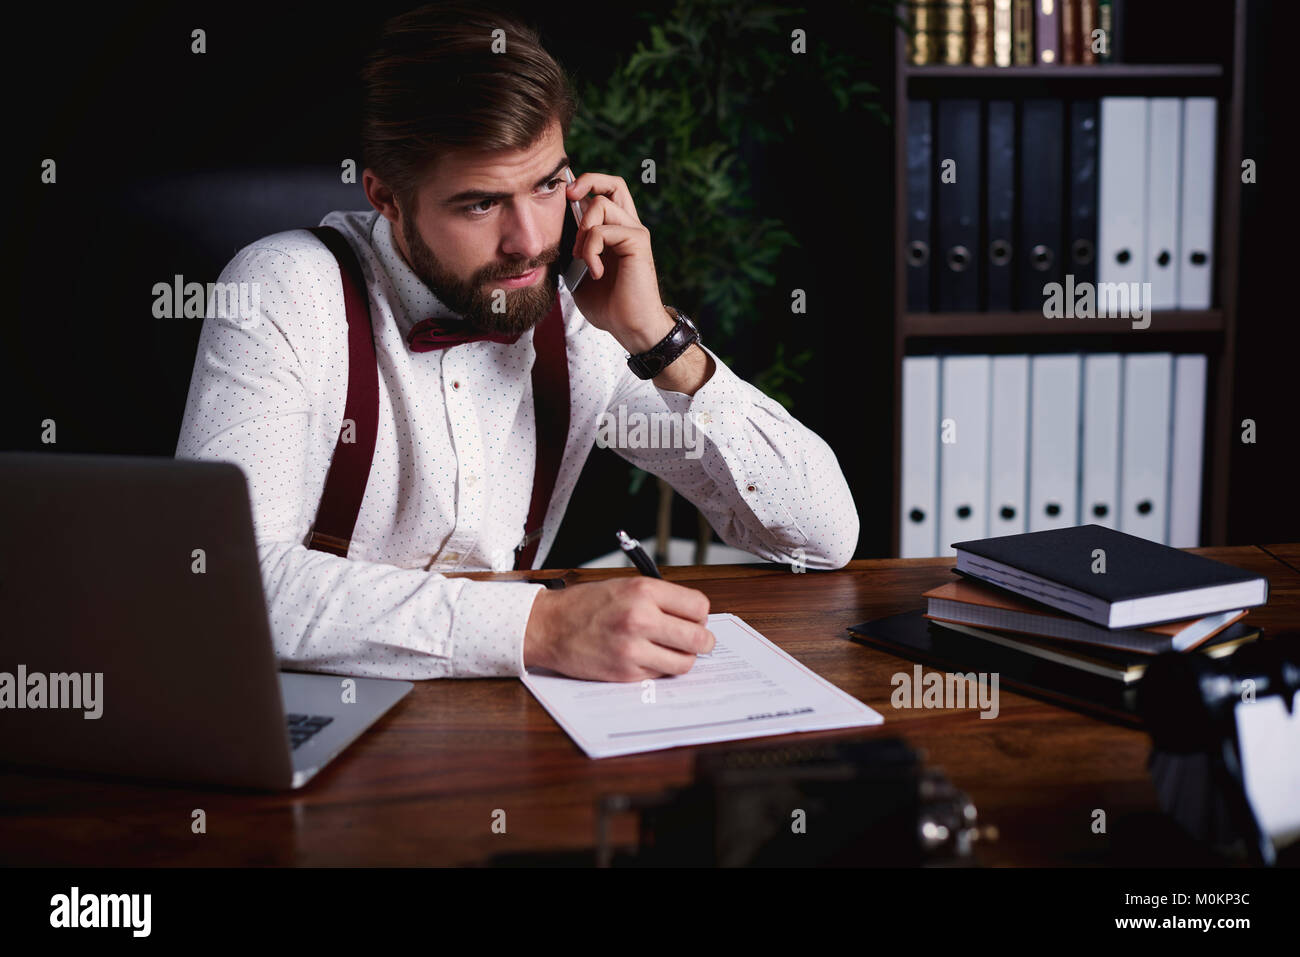 Business Person per Telefon Stockfoto